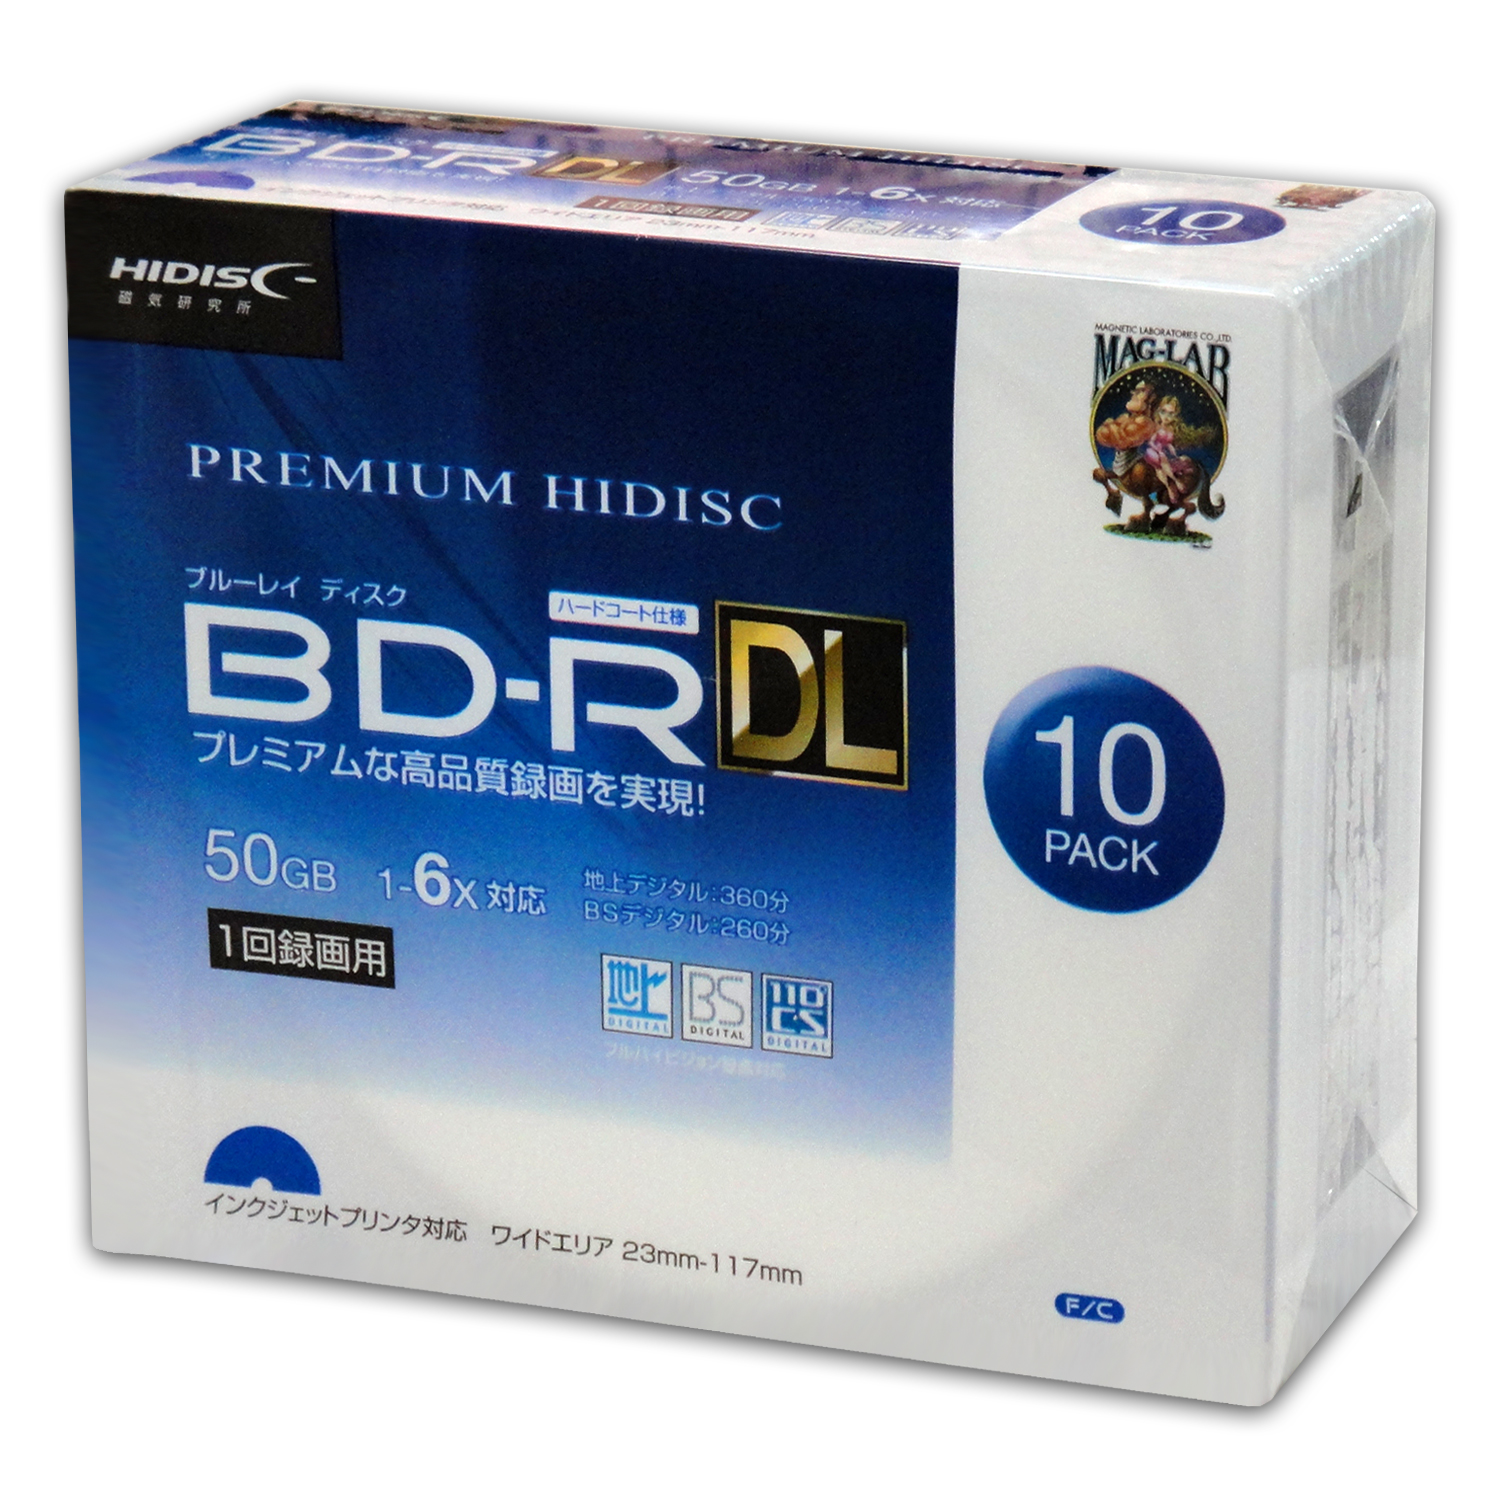 ニッサン・638 （まとめ）PREMIUM HIDISC BD-RE くり返し録画 2倍速 25GB 20Pスピンドルケース 〔×10個セット〕  HDVBE25NP20SPX10